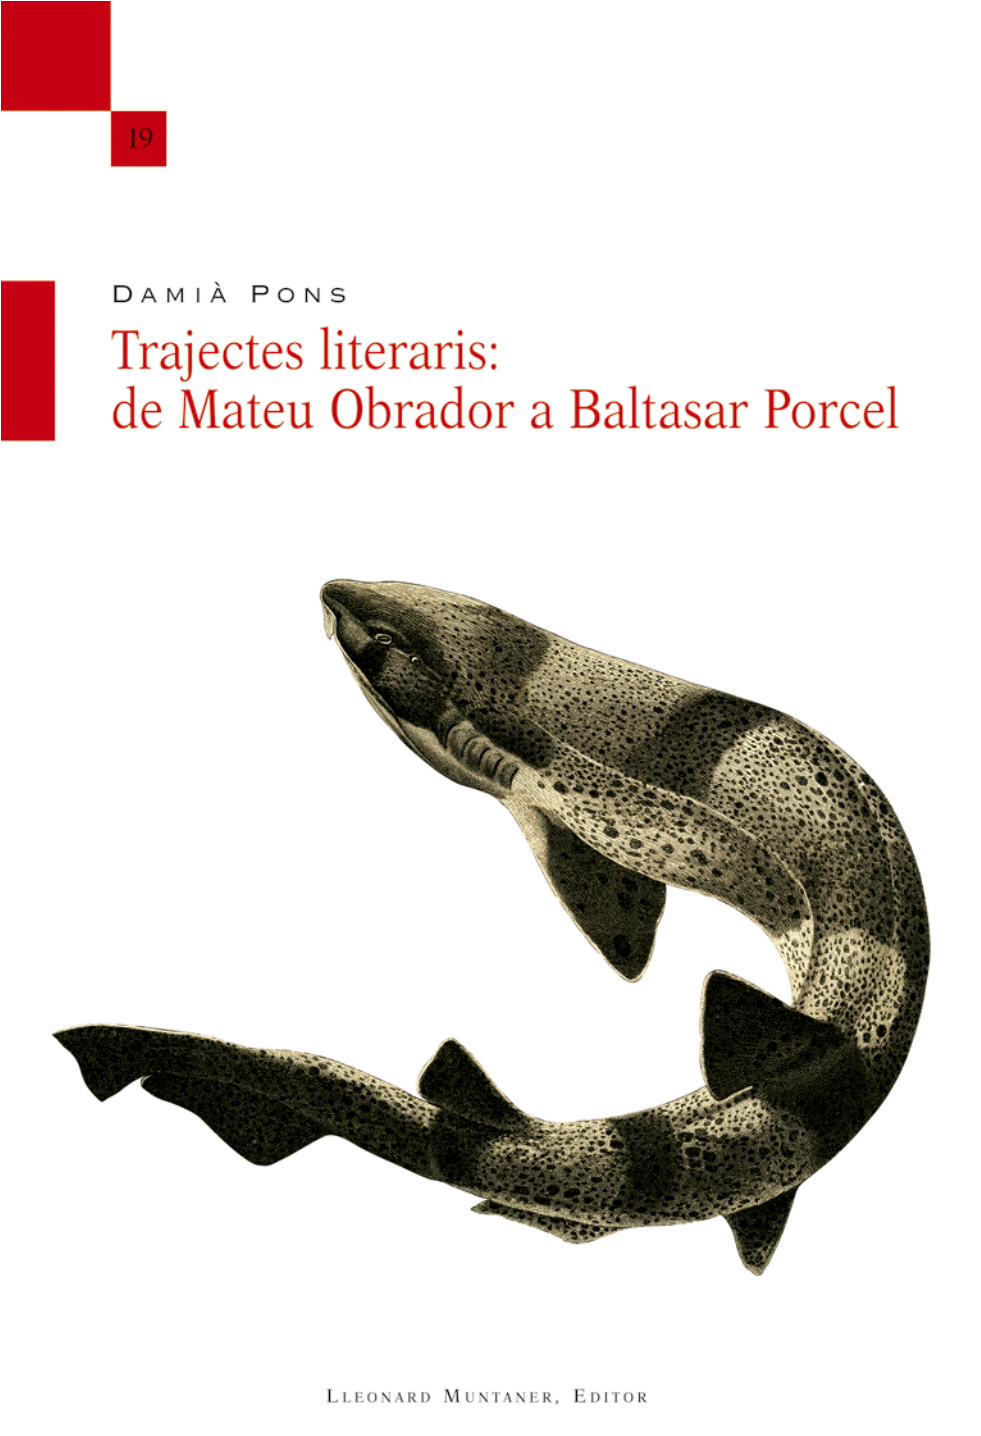 Imagen de portada del libro Trajectes literaris: de Mateu Obrador a Baltasar Porcel